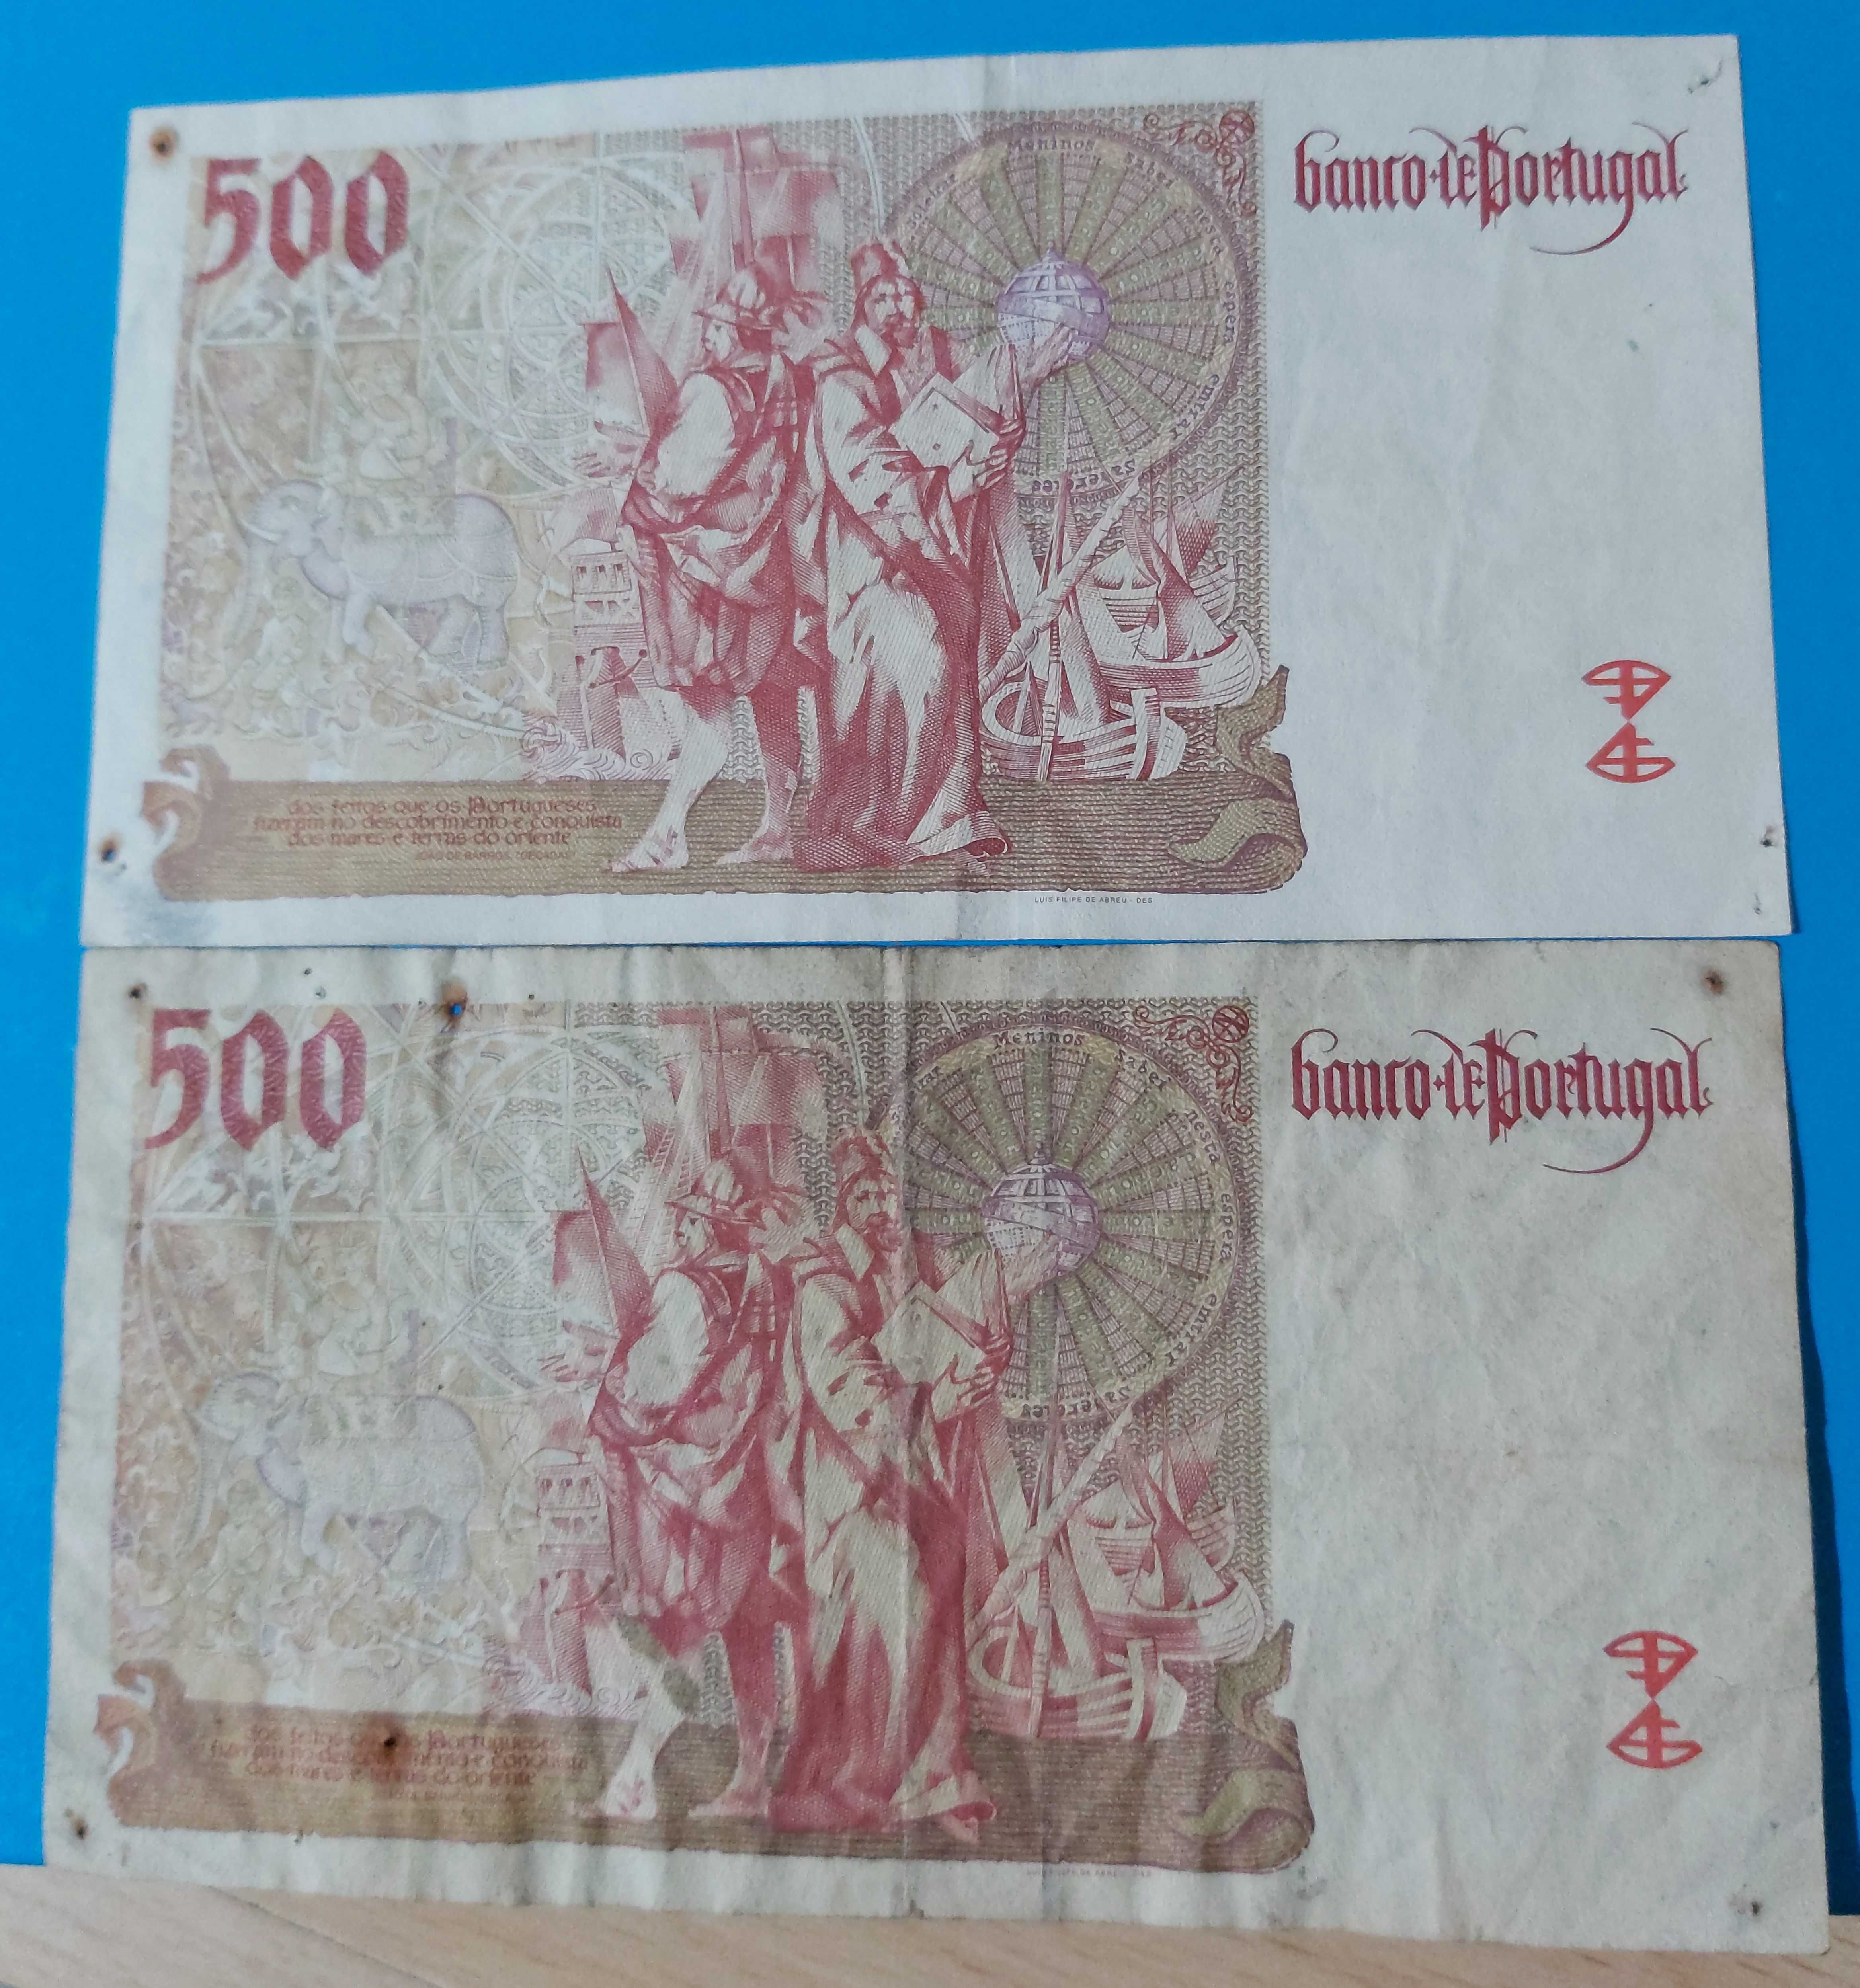 2 Notas de 500$00, CH 13, de João de Barros, 1997 e 2000